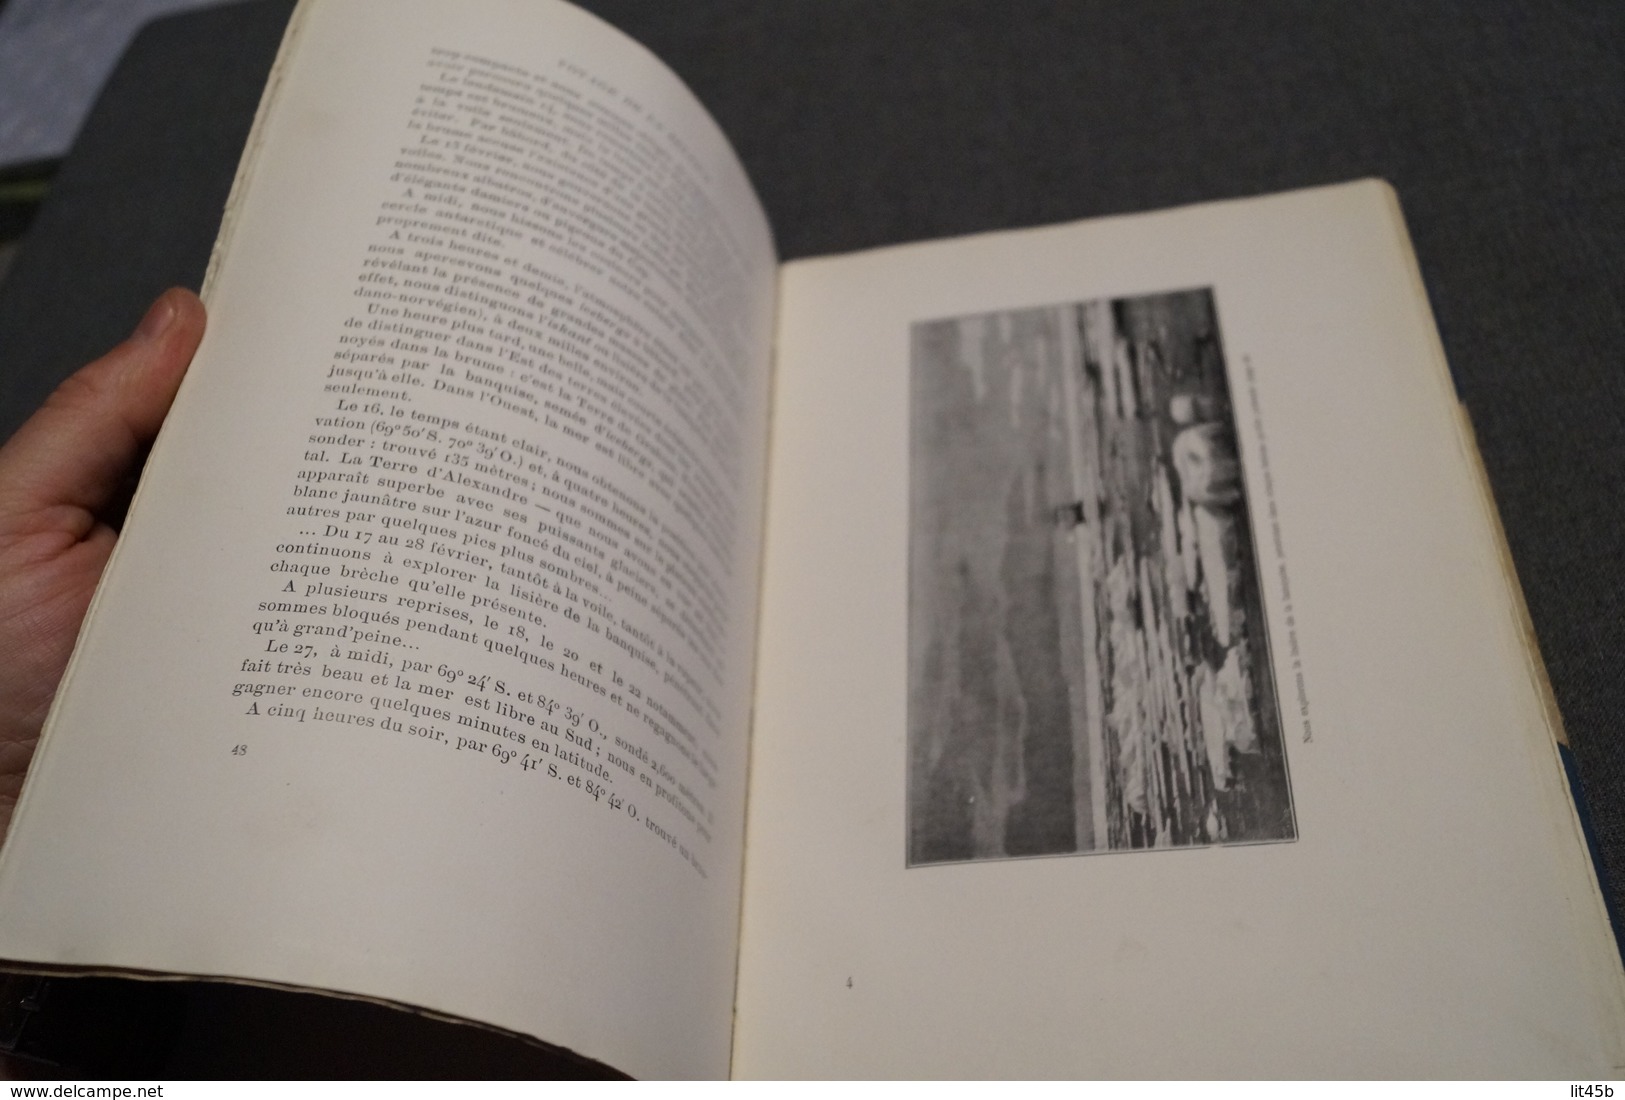 Voyage de la Belgica,par le commandant De Gerlache,1902,complet 95 pages,25,5 Cm / 17 Cm. Bateaux,RARE